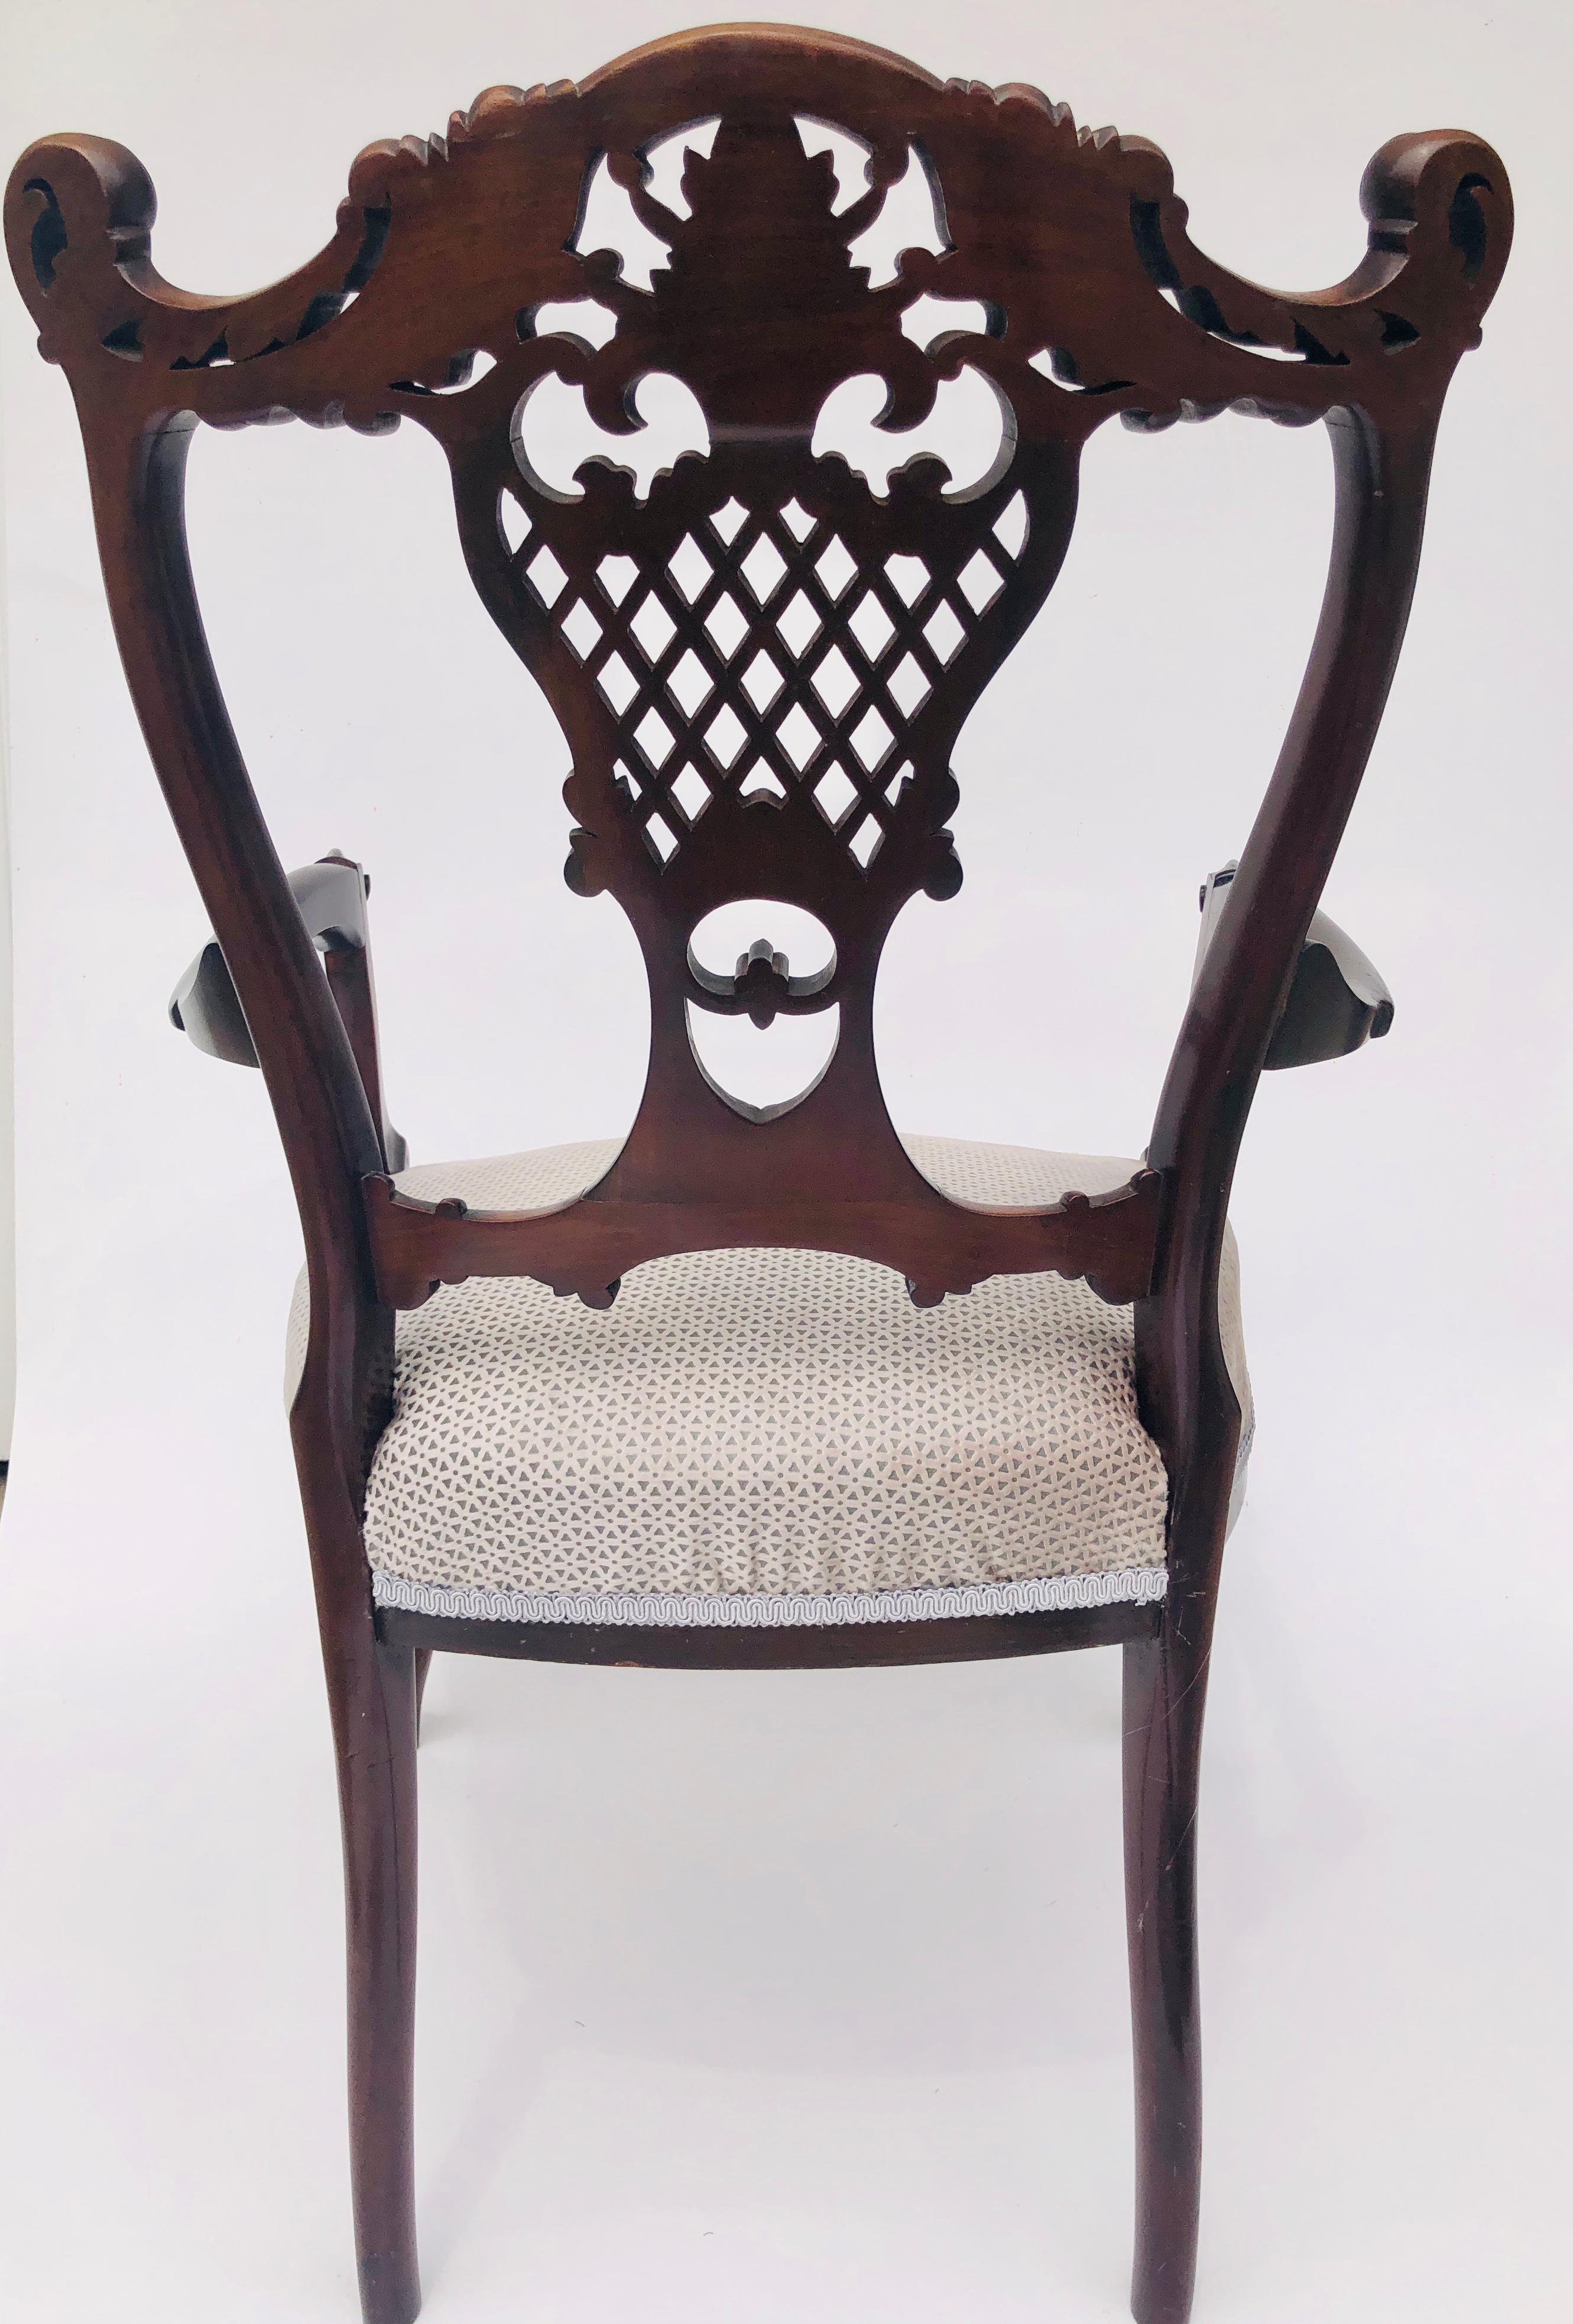 Feine Qualität antiken 19. Jahrhundert viktorianischen Mahagoni geschnitzt Sessel mit einer schönen geschnitzten durchbrochenen geformten Rücken. Geformte, geschnitzte, offene Arme, auf geschnitzten Cabriole-Füßen stehend und mit nach außen